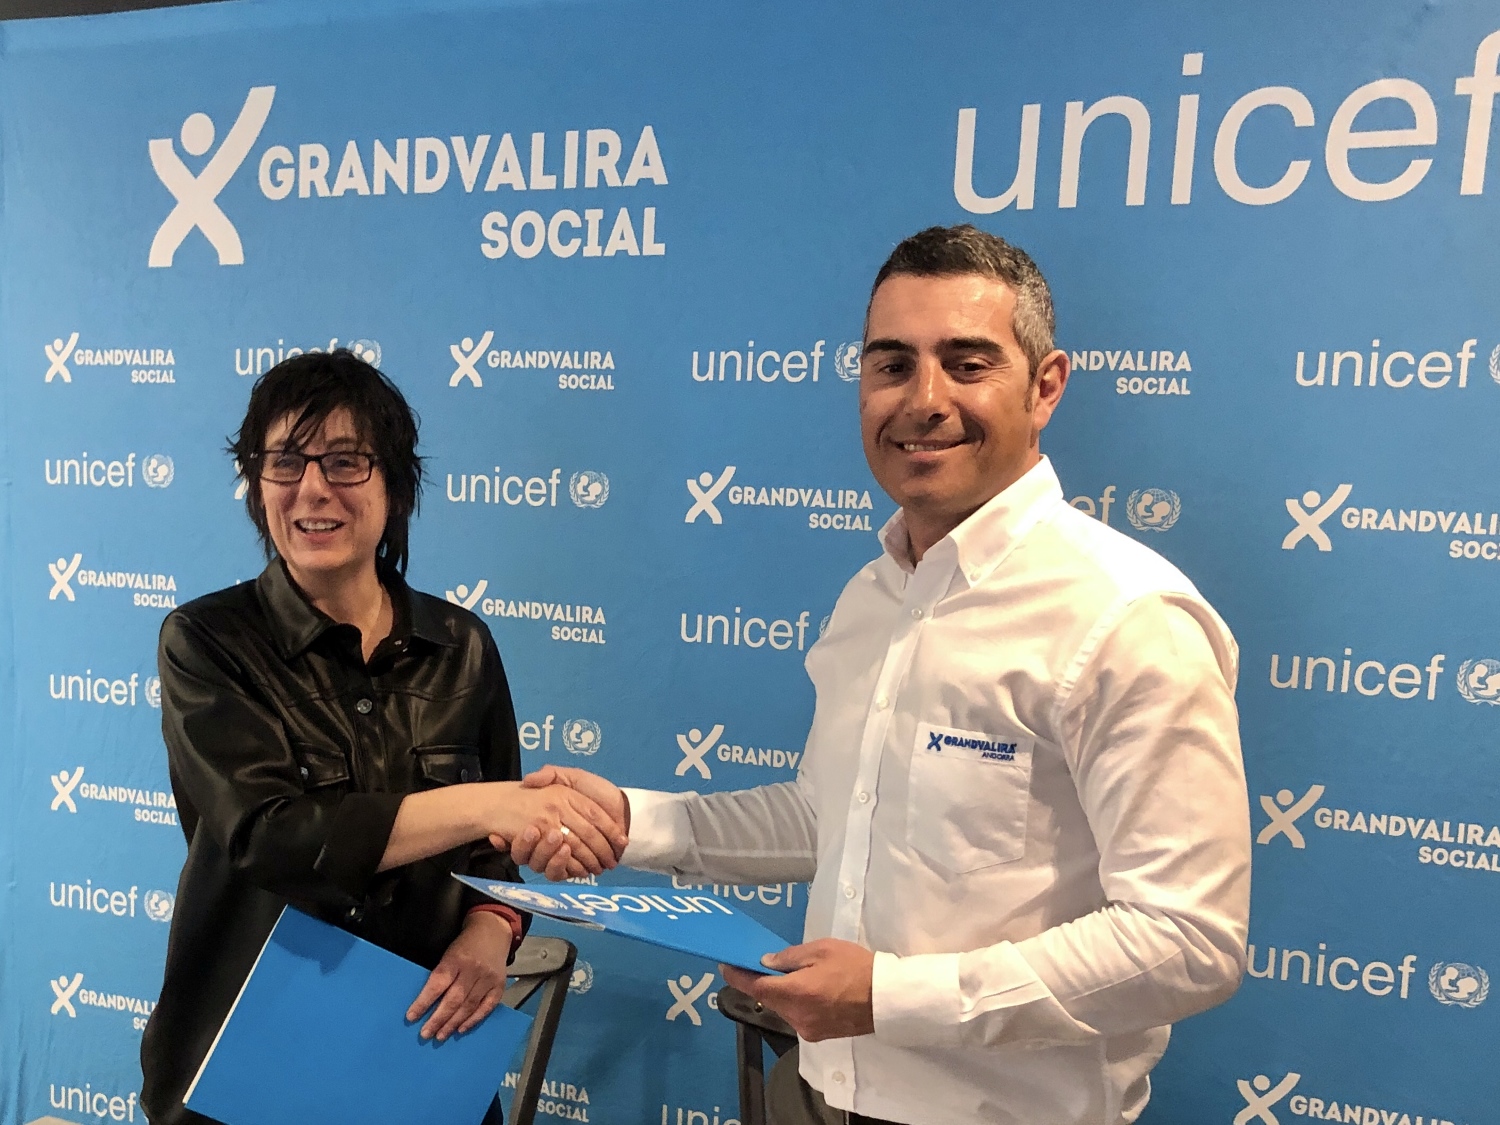 Grandvalira Social y Unicef Andorra renuevan el acuerdo de colaboración